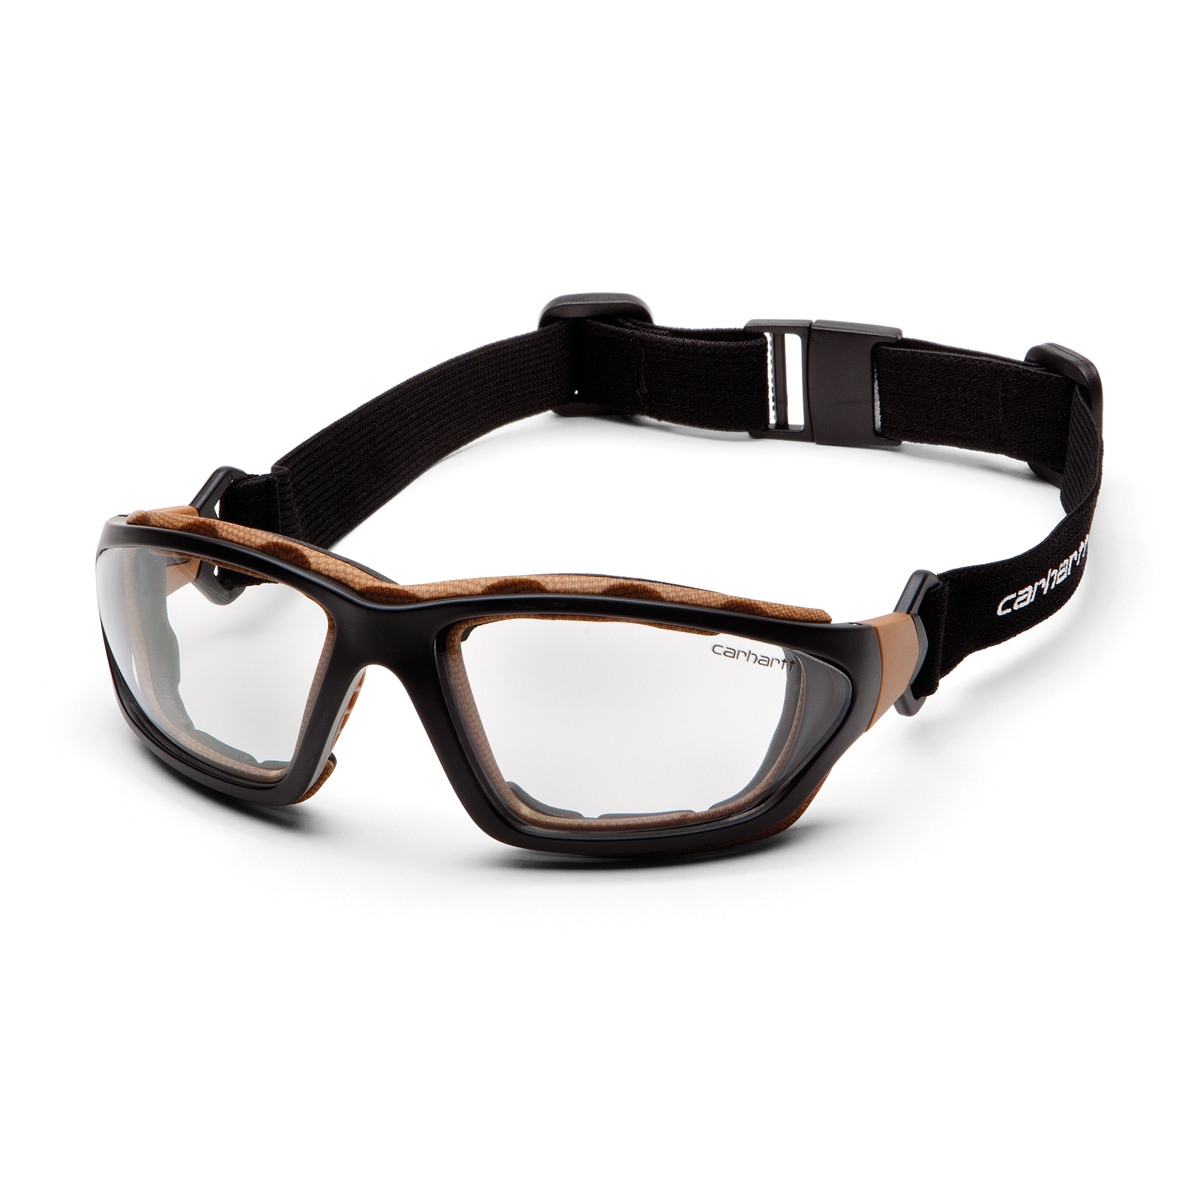 Carhartt Carthage Safety Eyewear - Black/Tan Frame - Clear Anti-Fog ...